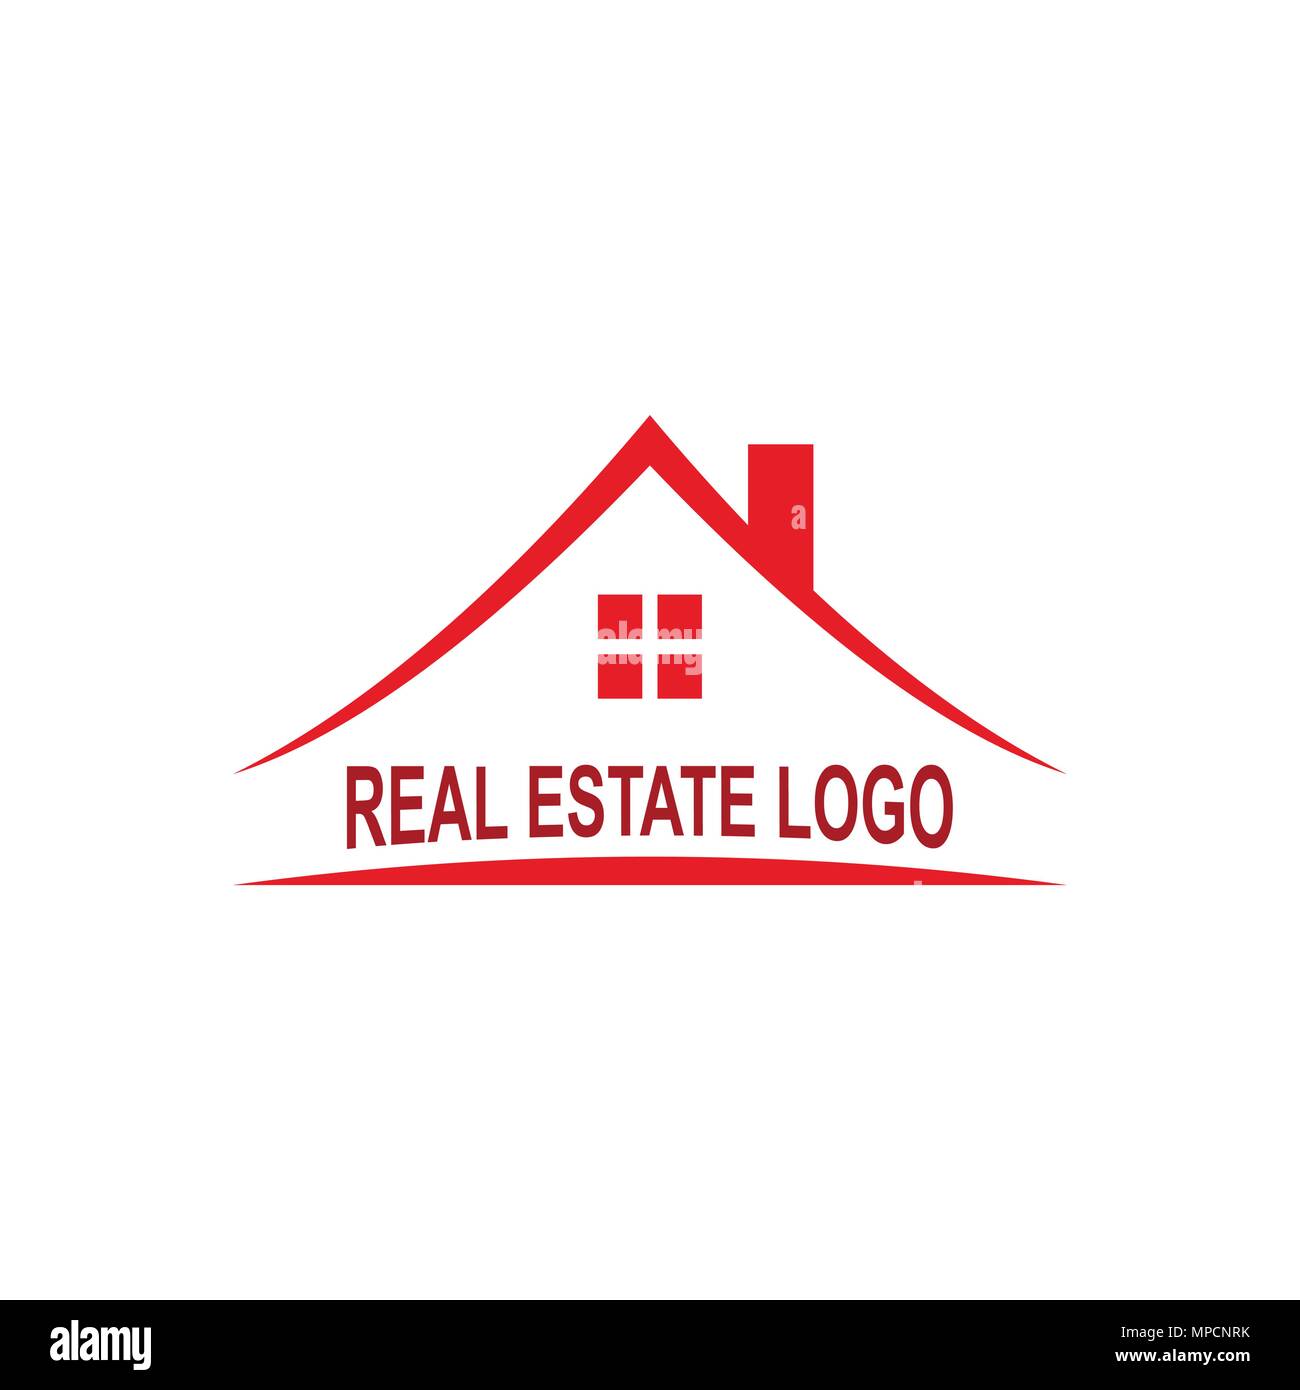 Real estate logo, house logo design, vector icon. Stock Vector